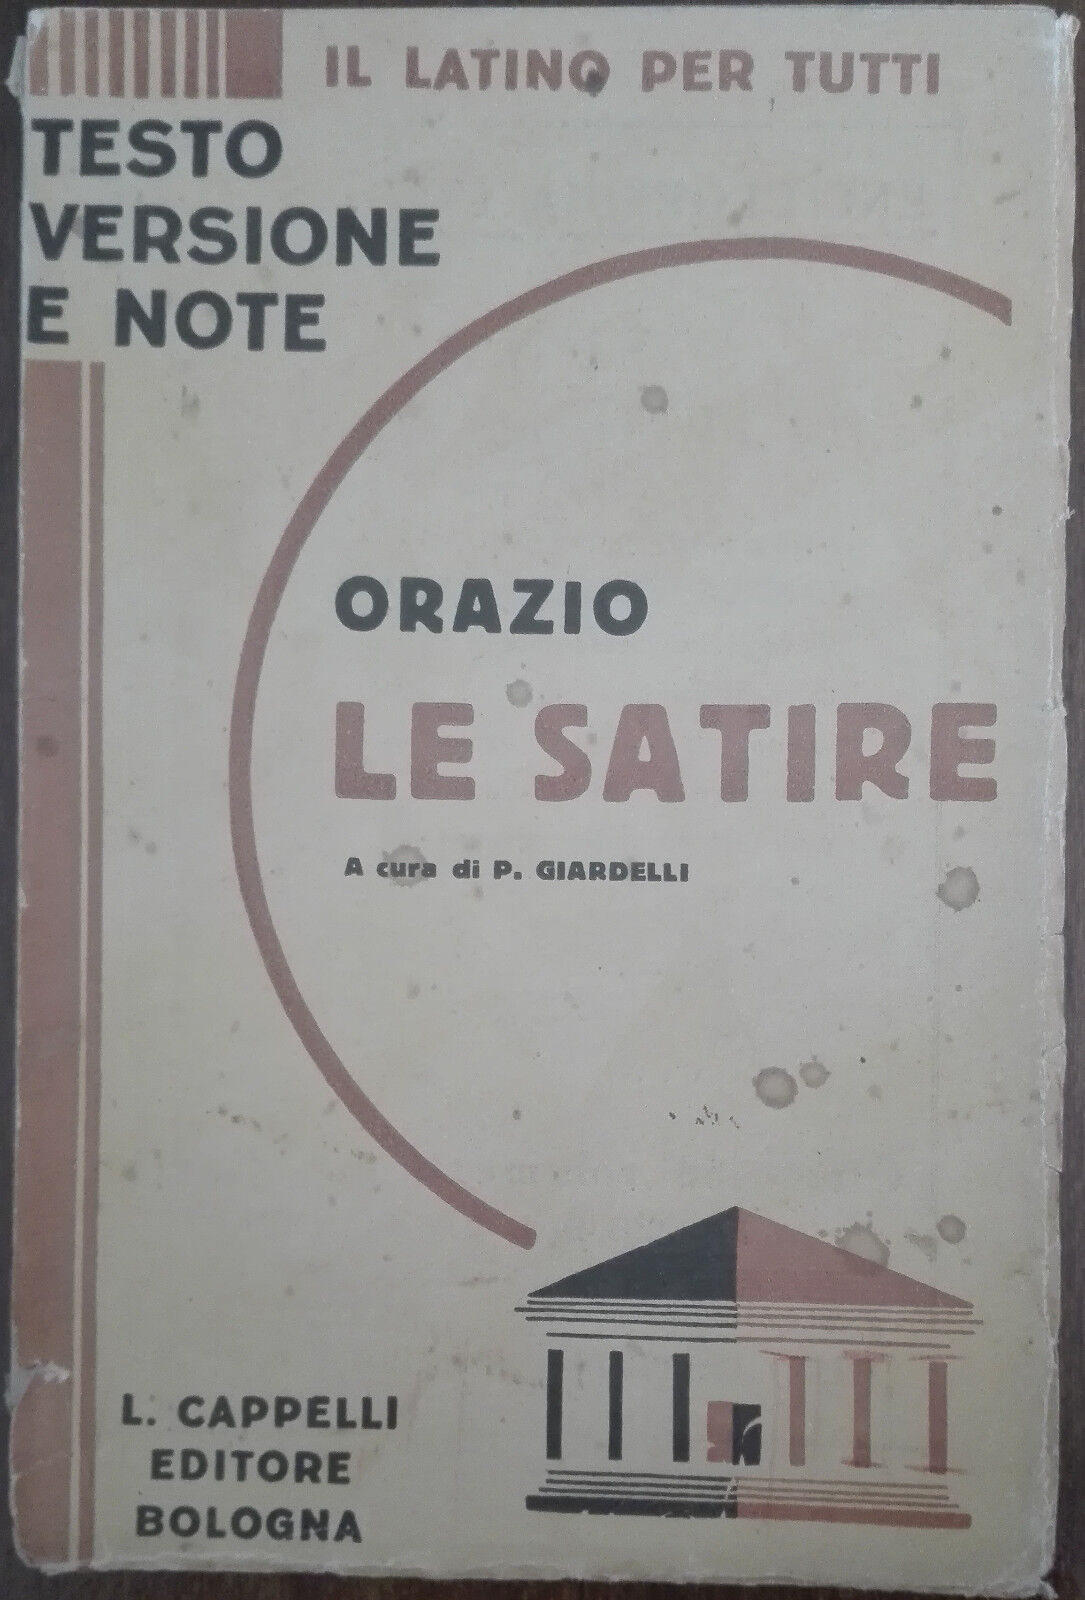 Le satire - Orazio - L. Cappelli,1939 - A 